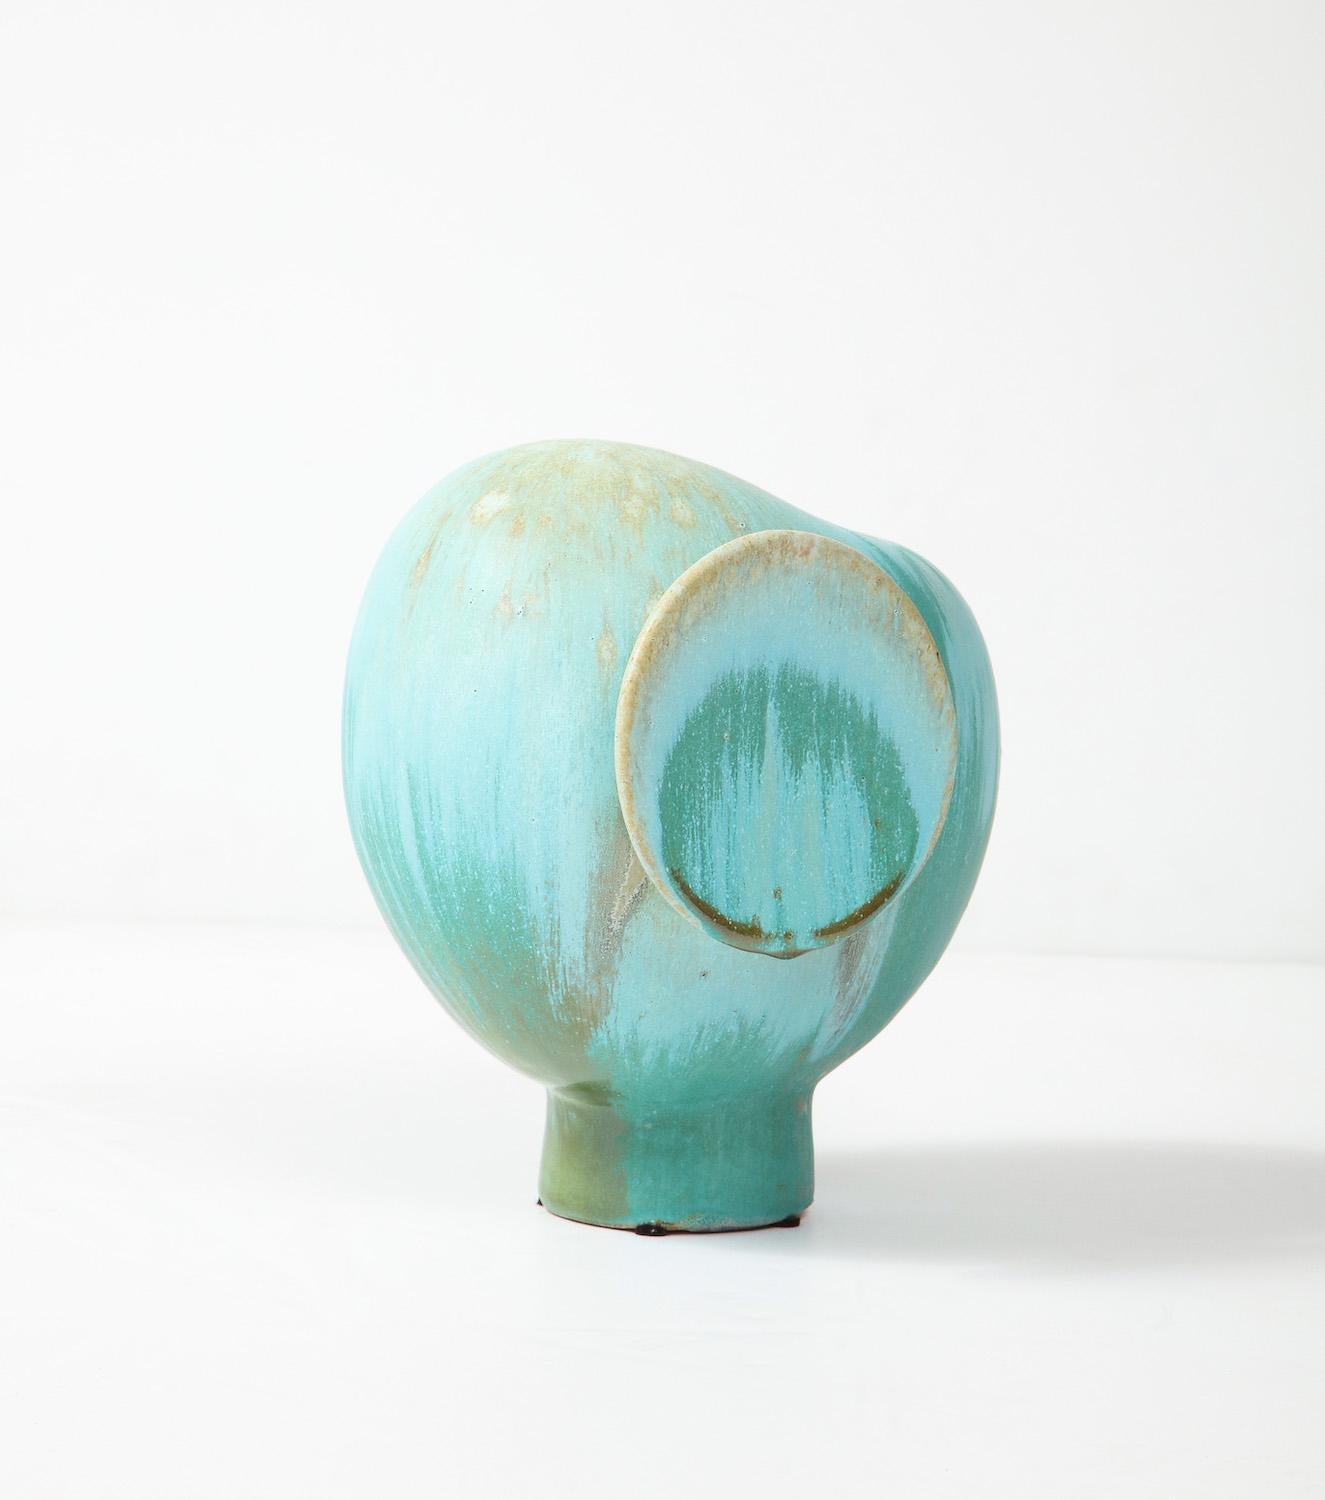 American Owl Bud Vase #1 by Robbie Heidinger